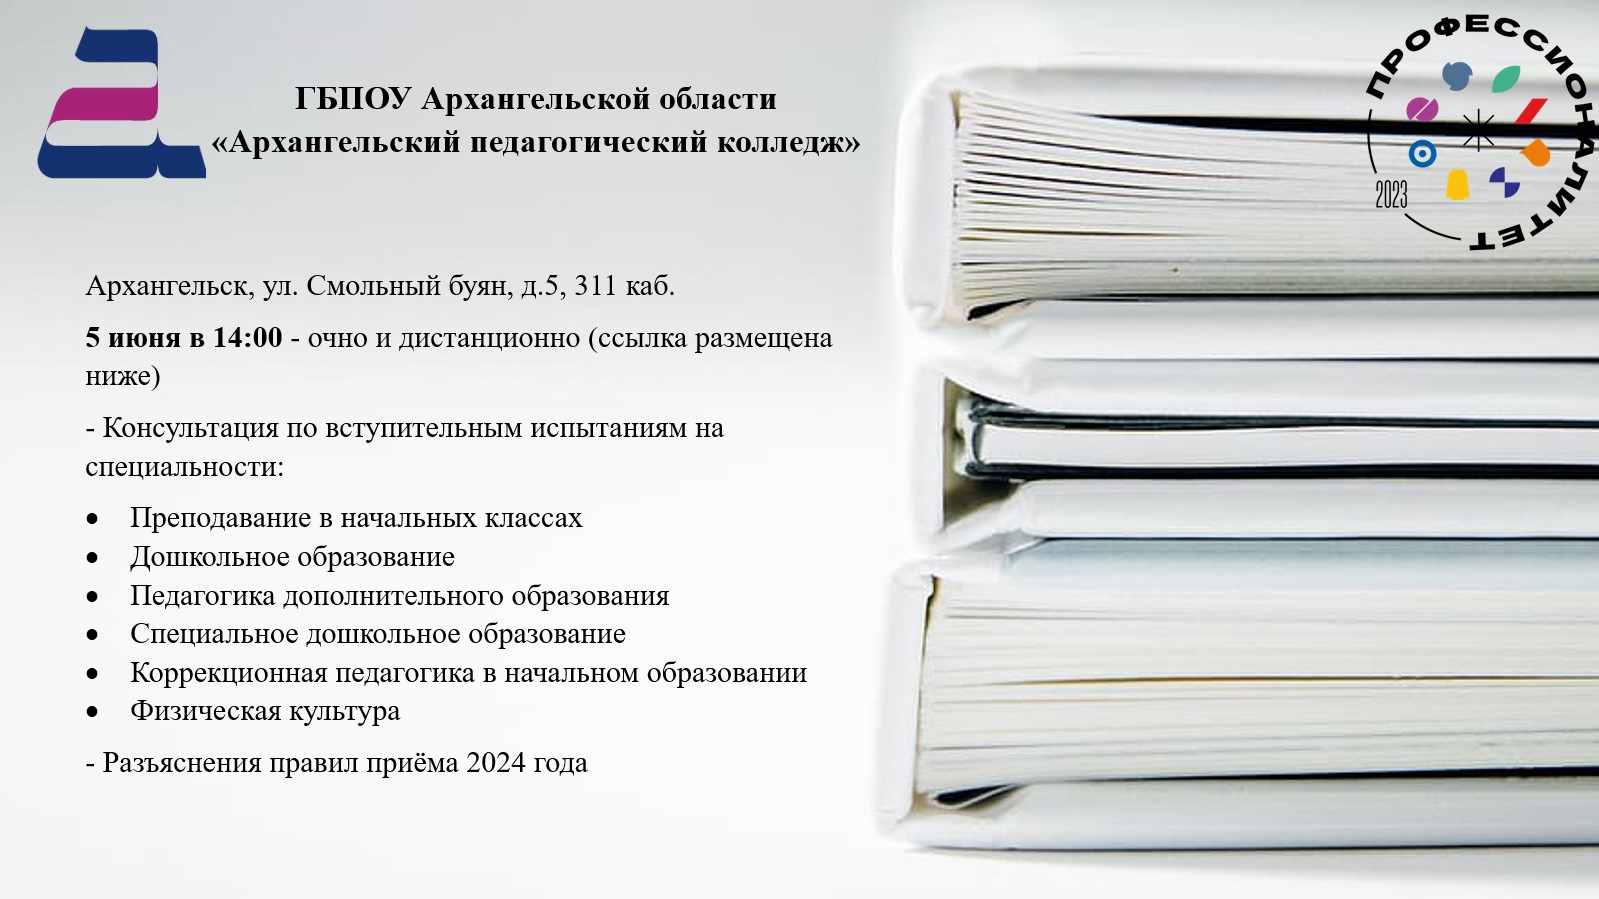 Архангельский педагогический колледж проводит для абитуриентов консультацию по вступительным испытаниям и приёму в 2024 году.